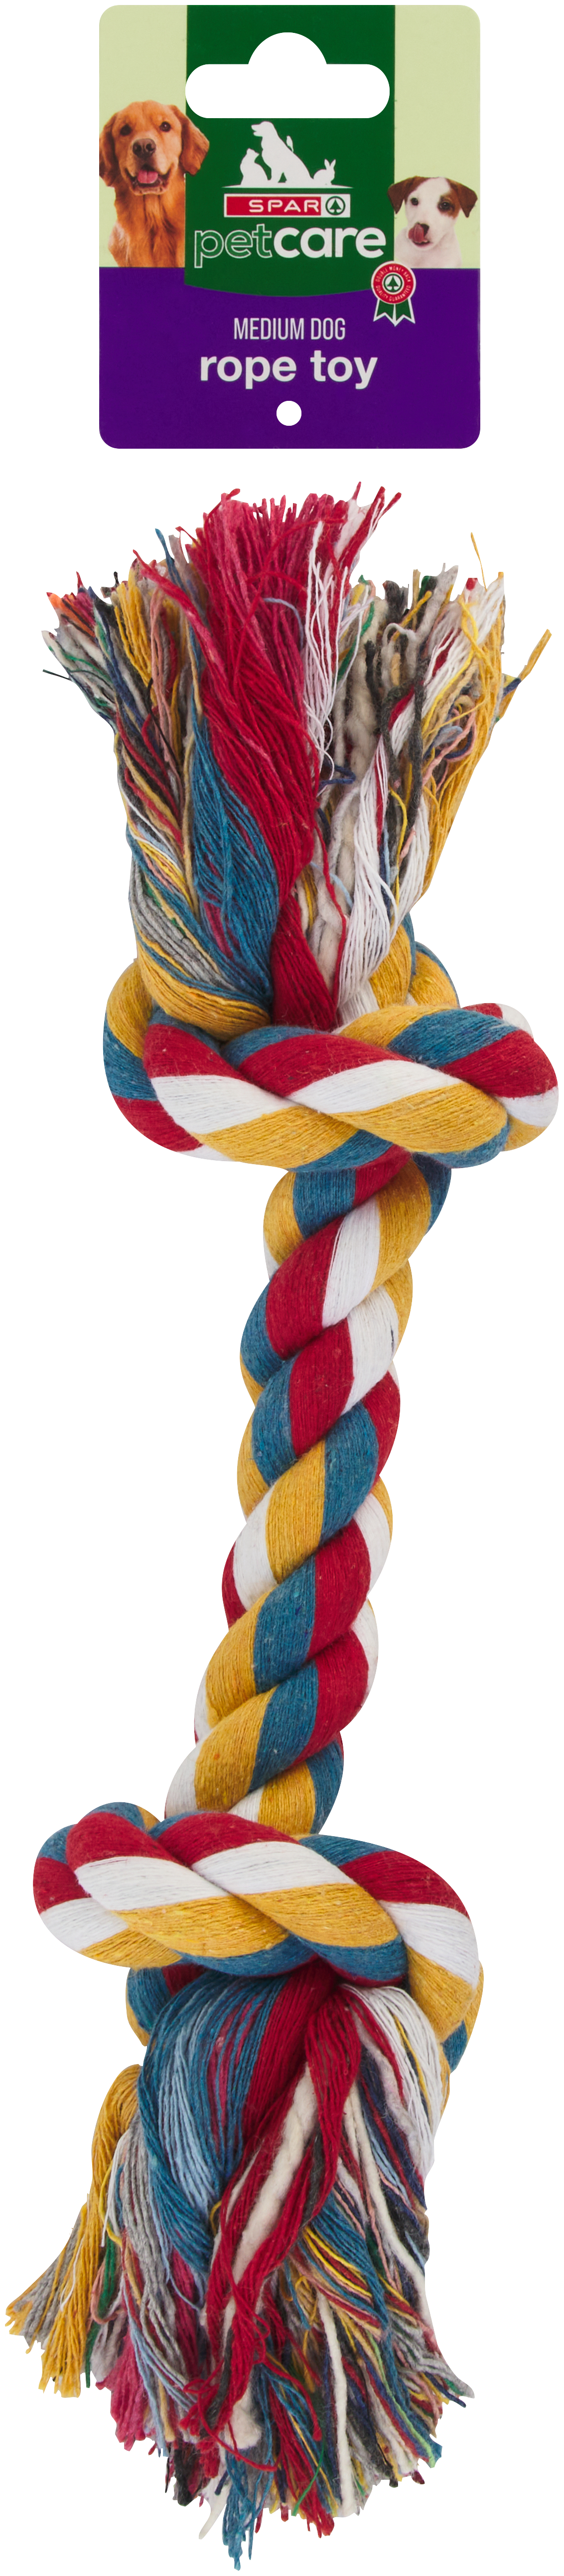 medium dog rope toy